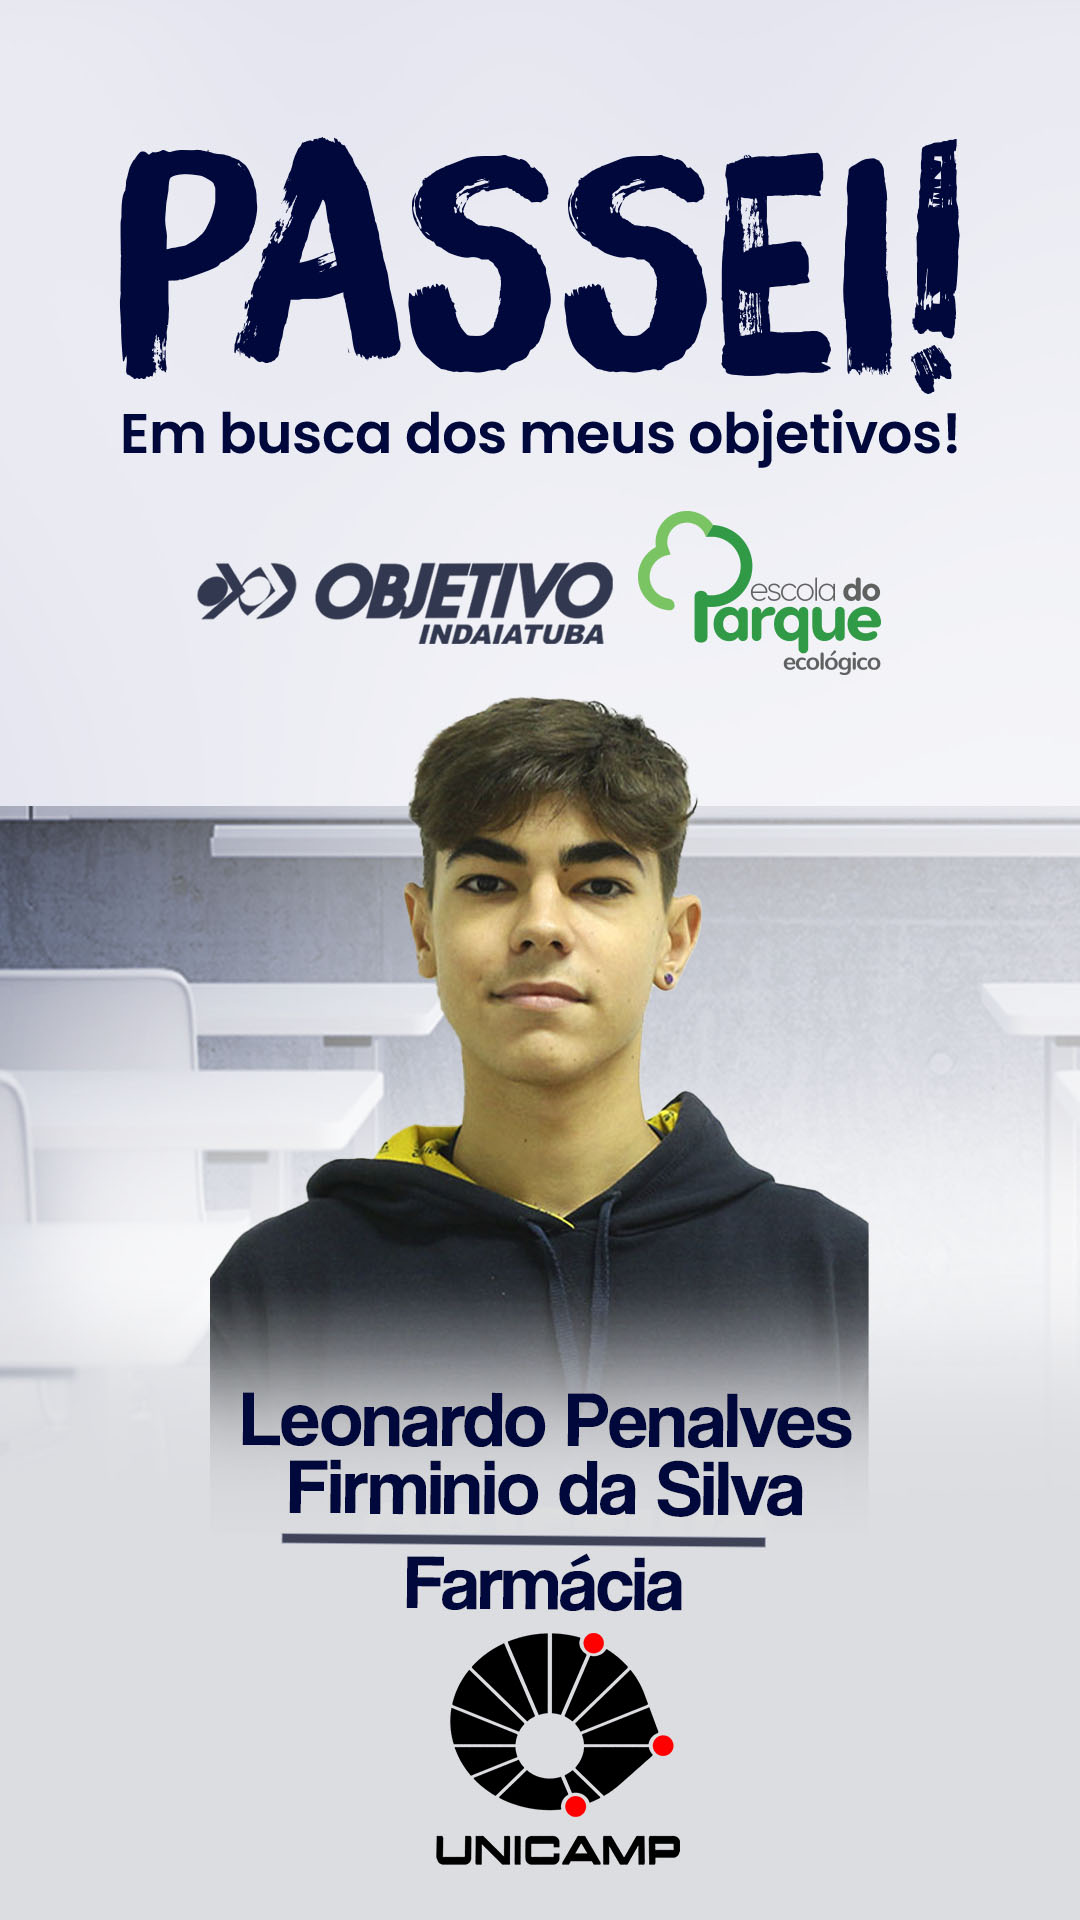 Leonardo Penalves Firminio da Silva